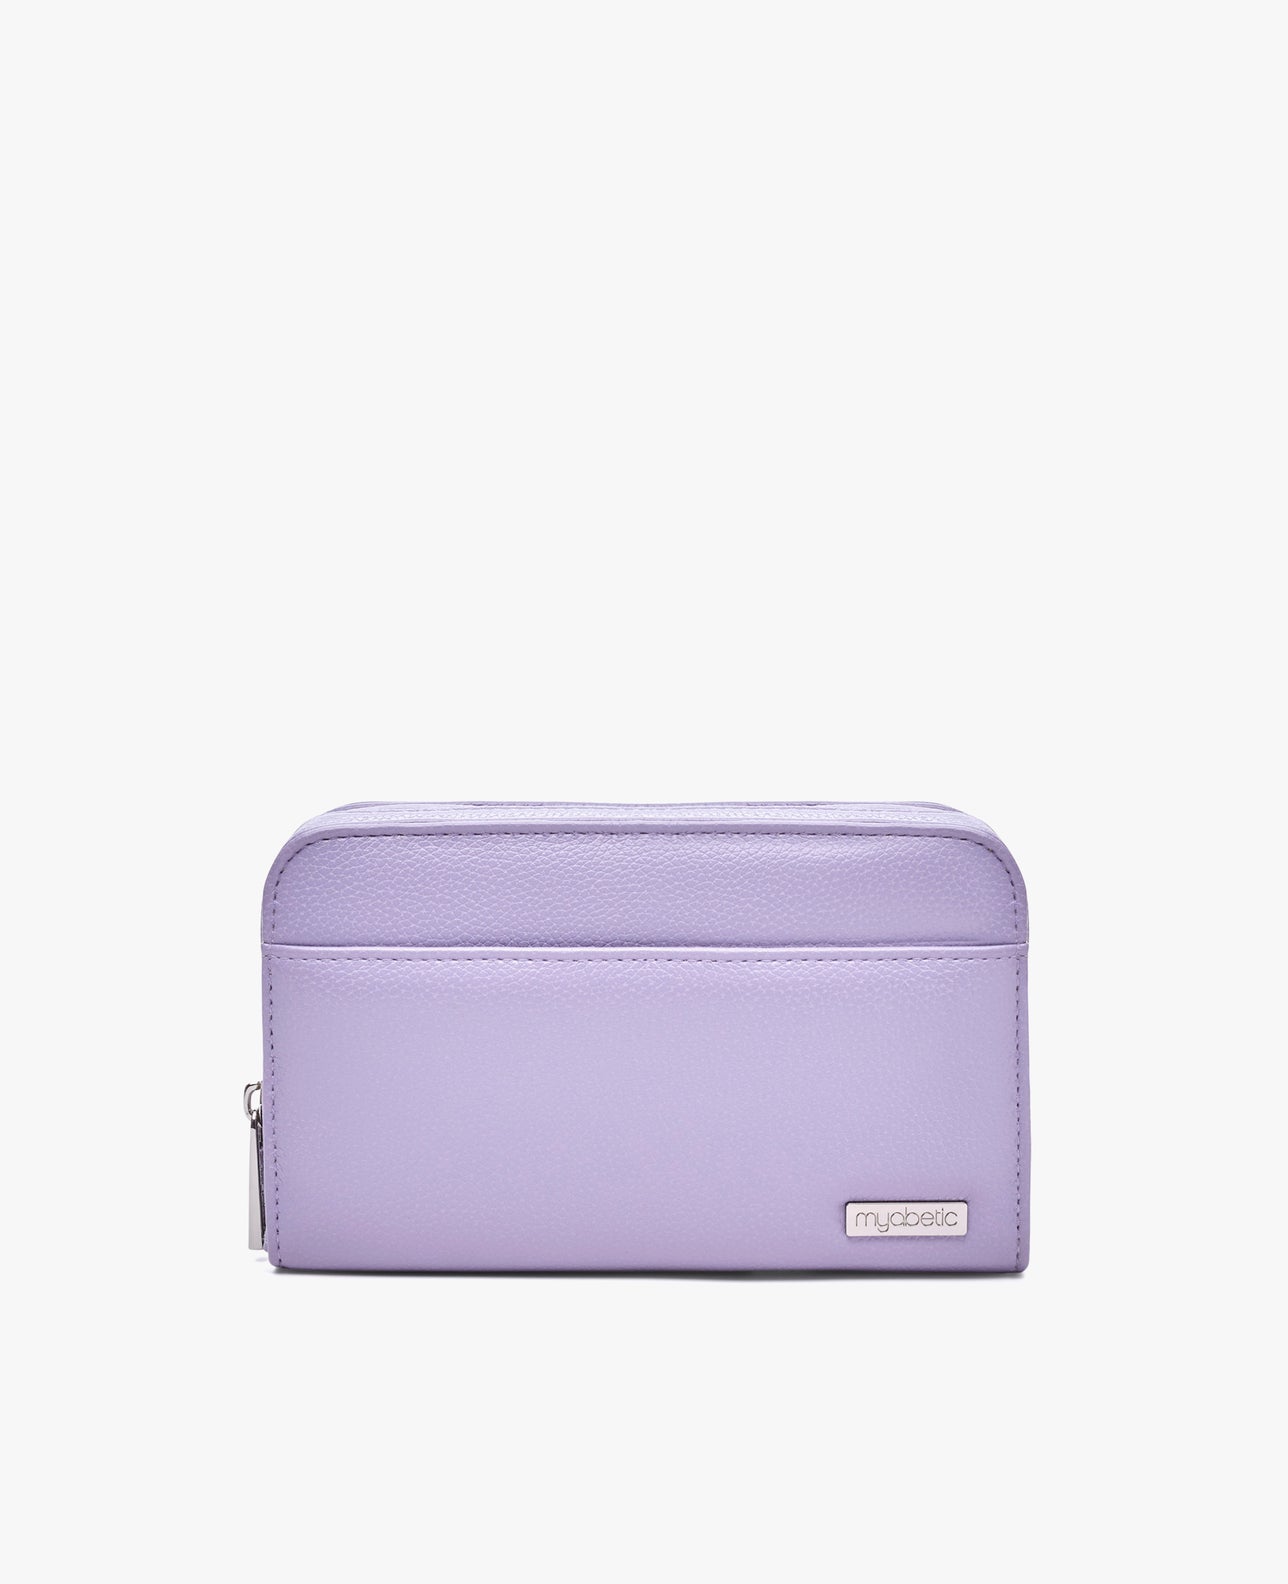 Color:Lavender